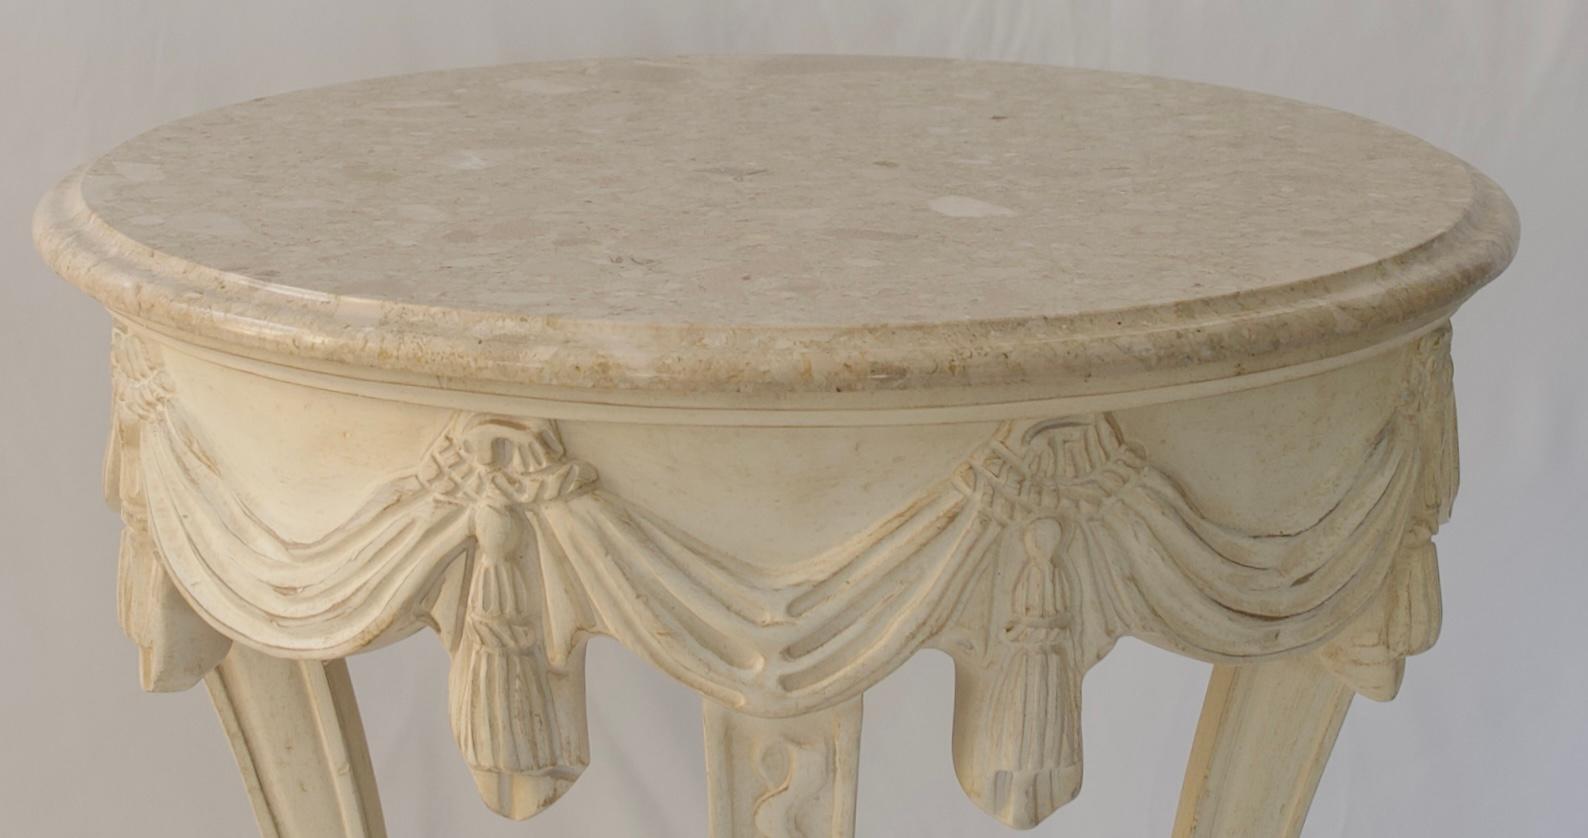 Französischer Beistelltisch im Stil Louis XVI mit beiger italienischer Marmorplatte. 
Die Motive rund um die Platte und die geschwungenen Beine machen diesen stilvollen Beistelltisch im französischen Louis-XVI-Stil besonders reizvoll.